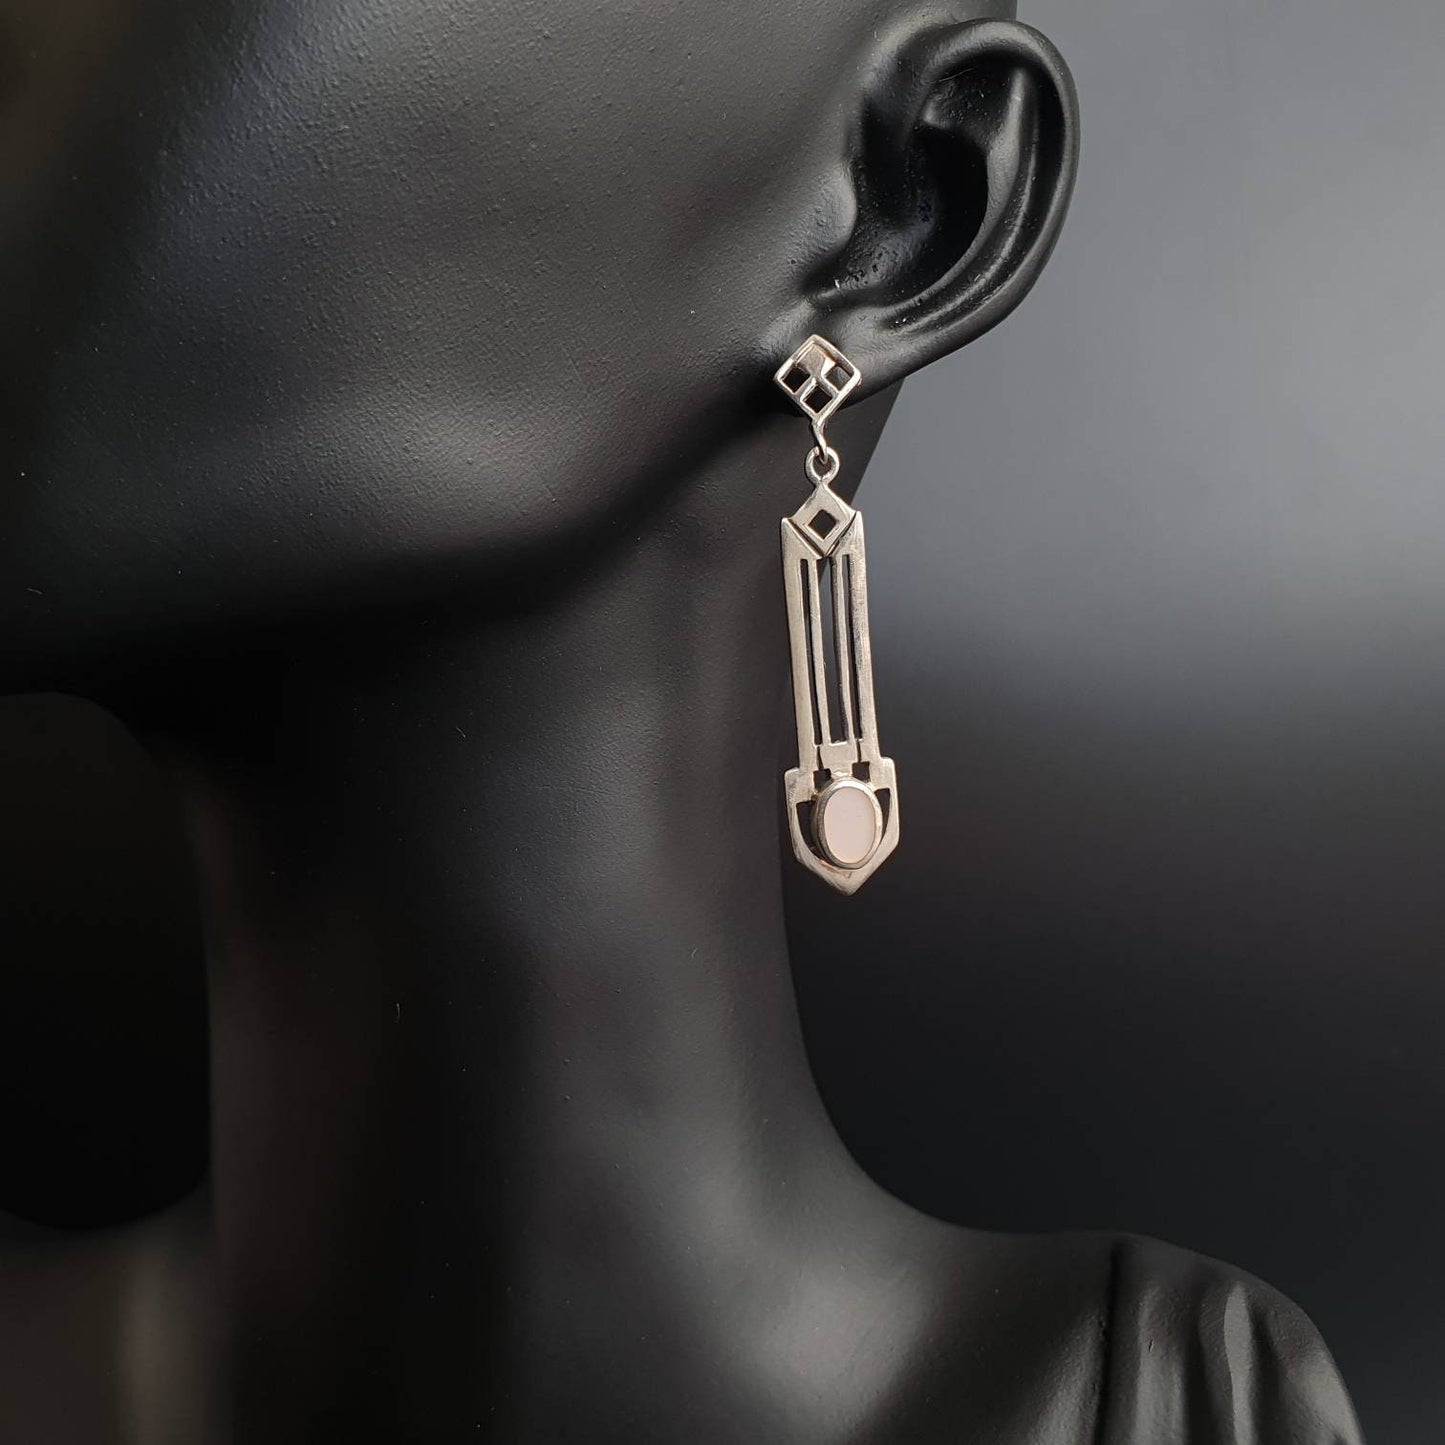 Art deco earrings, sterling silver earrings, statement earrings, vintage earrings, Xmas gifts, silver earrings, 925 earrings